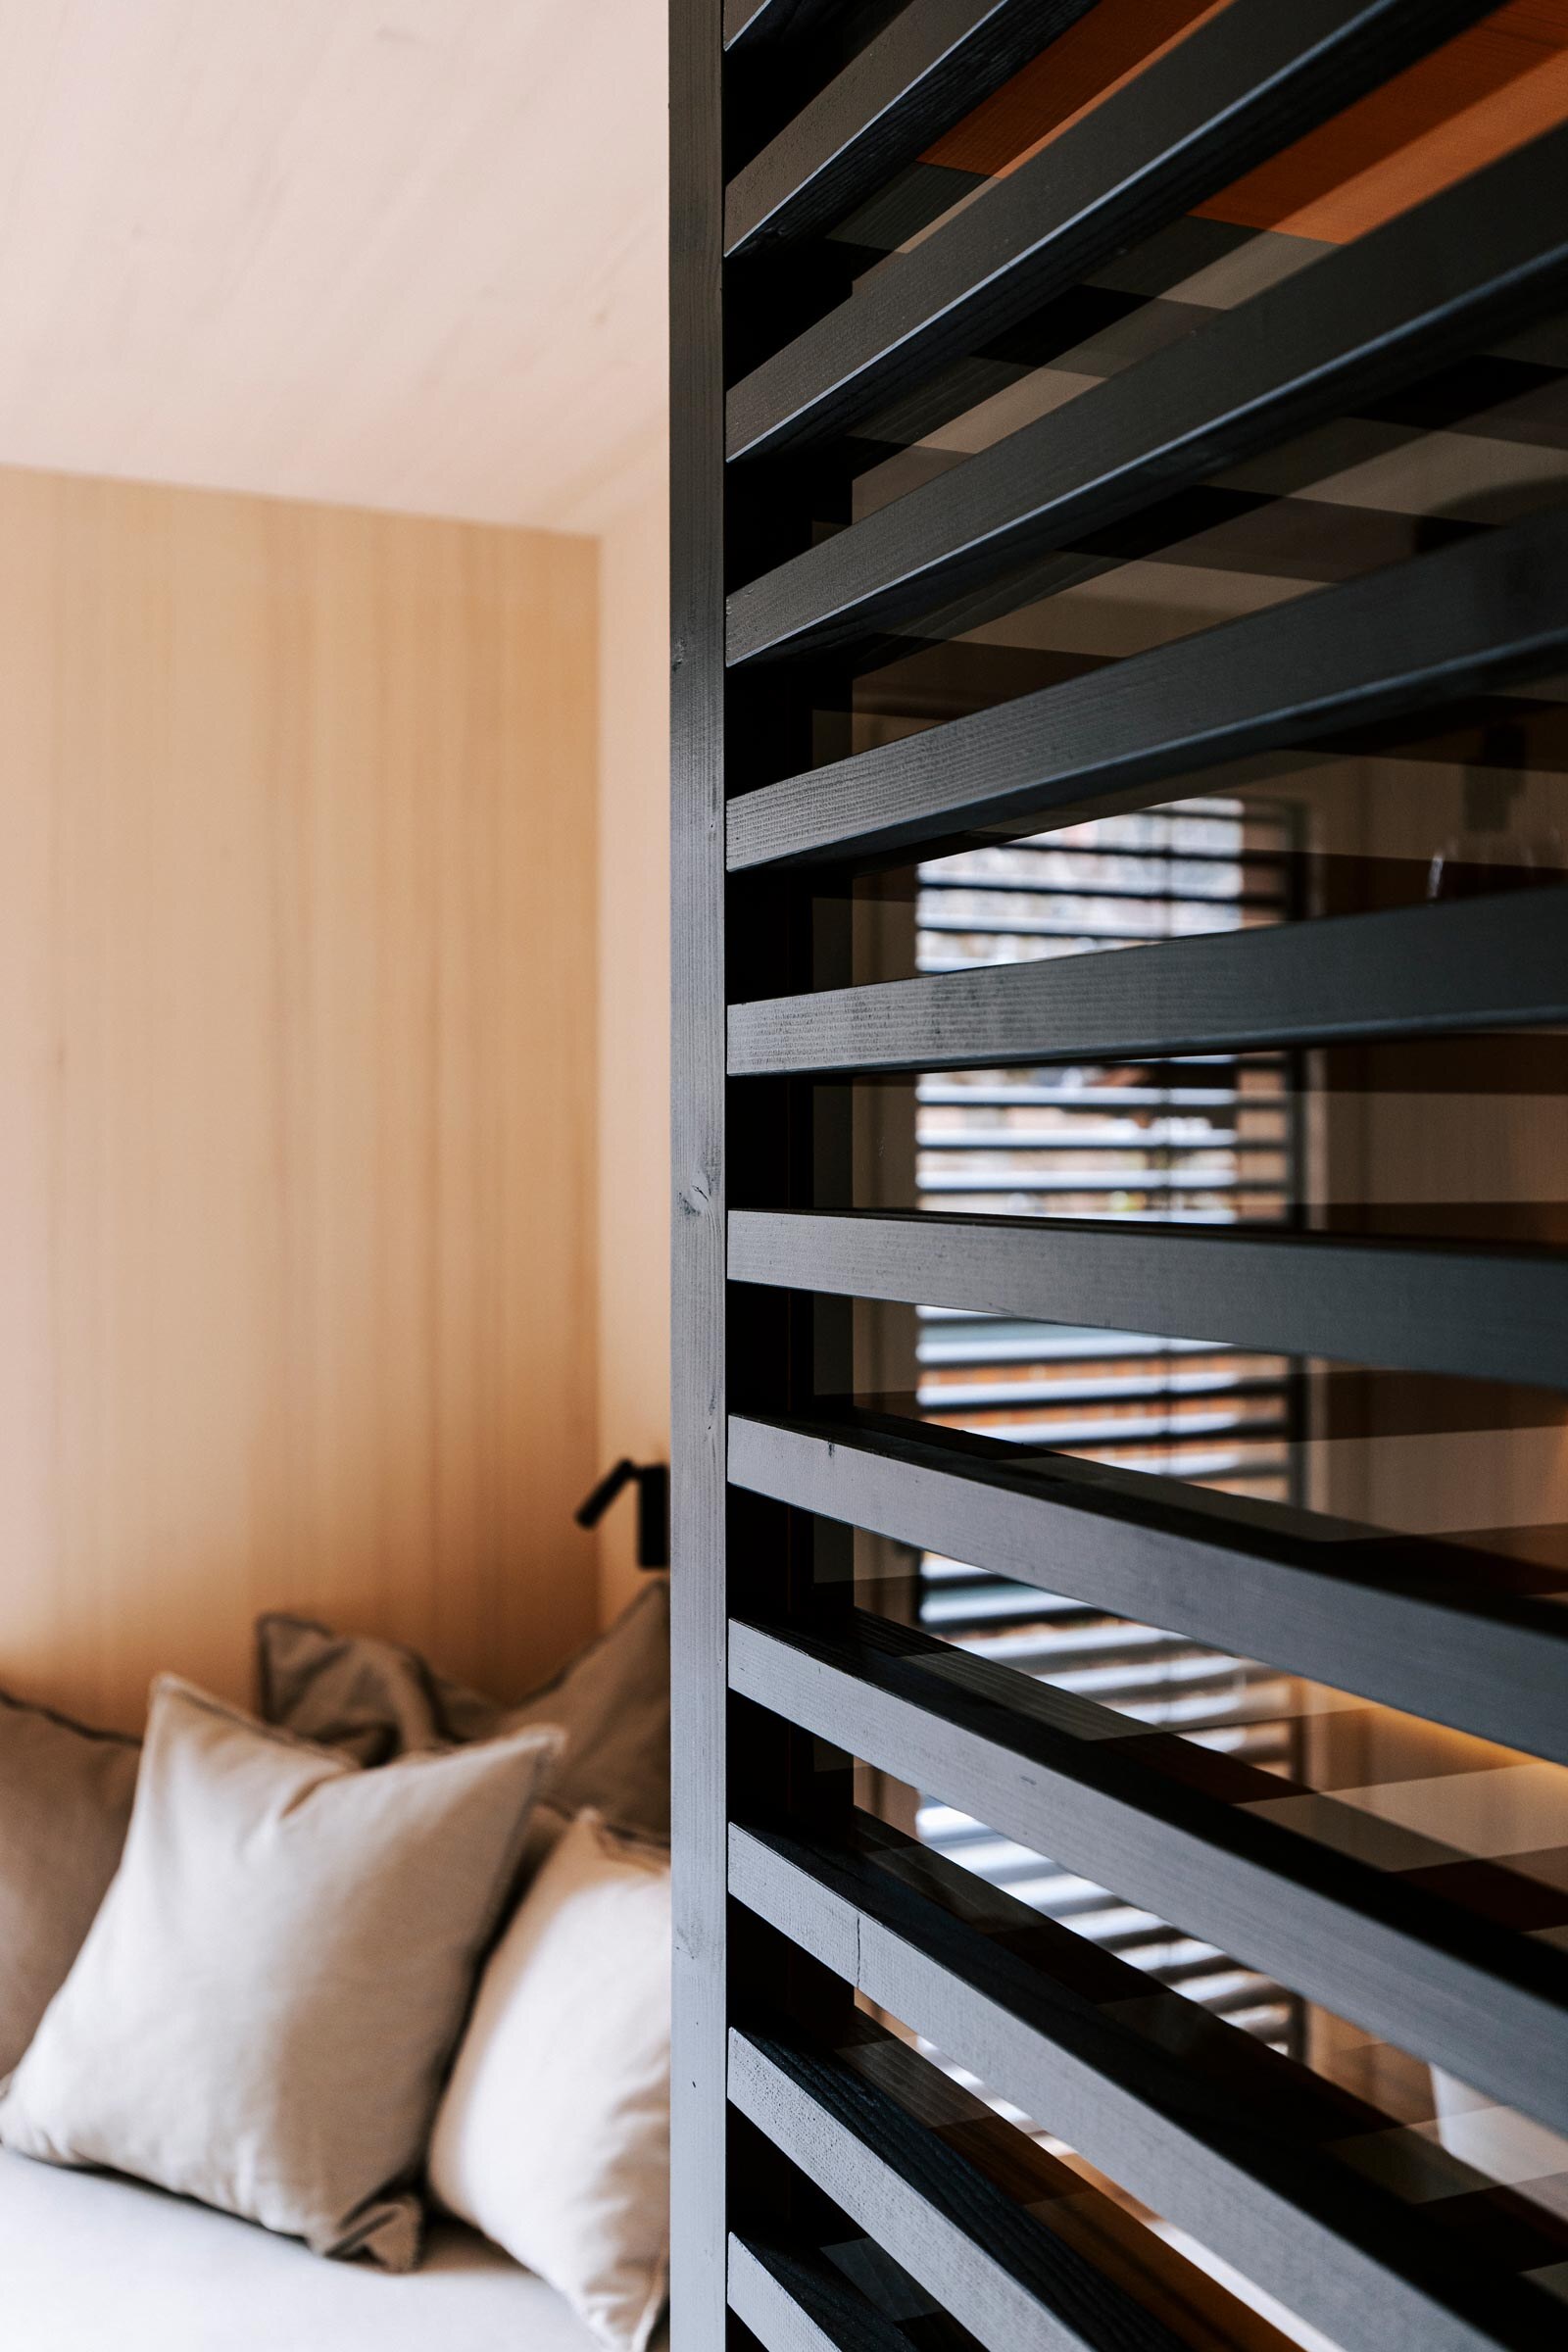 Schwarz getoente Holzstreben-Verkleidung als Sichtschutz einer modernen Sauna mit anschliessendem Daybed.